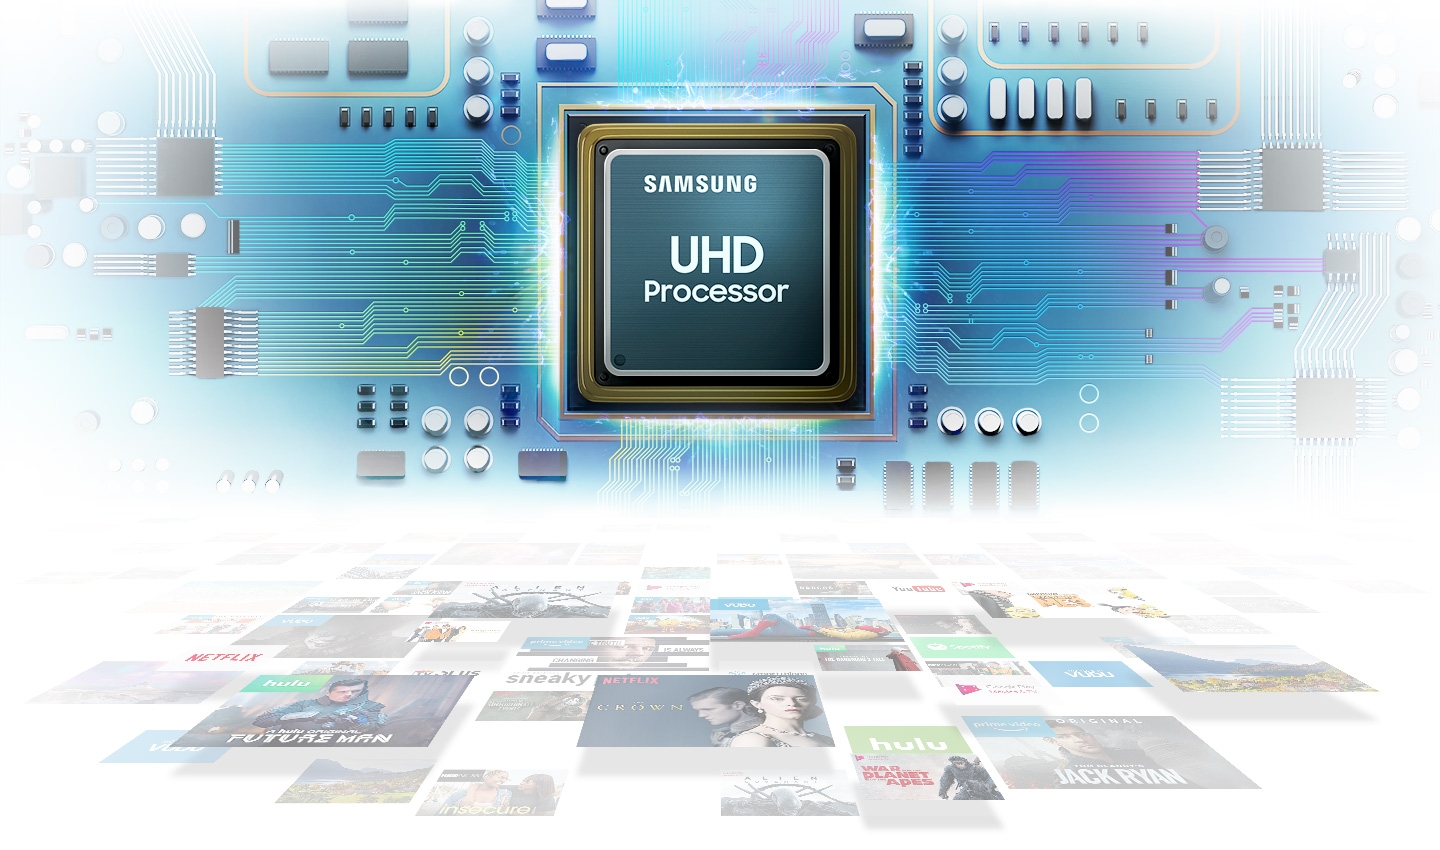 UHD Processor, pour des performances améliorées